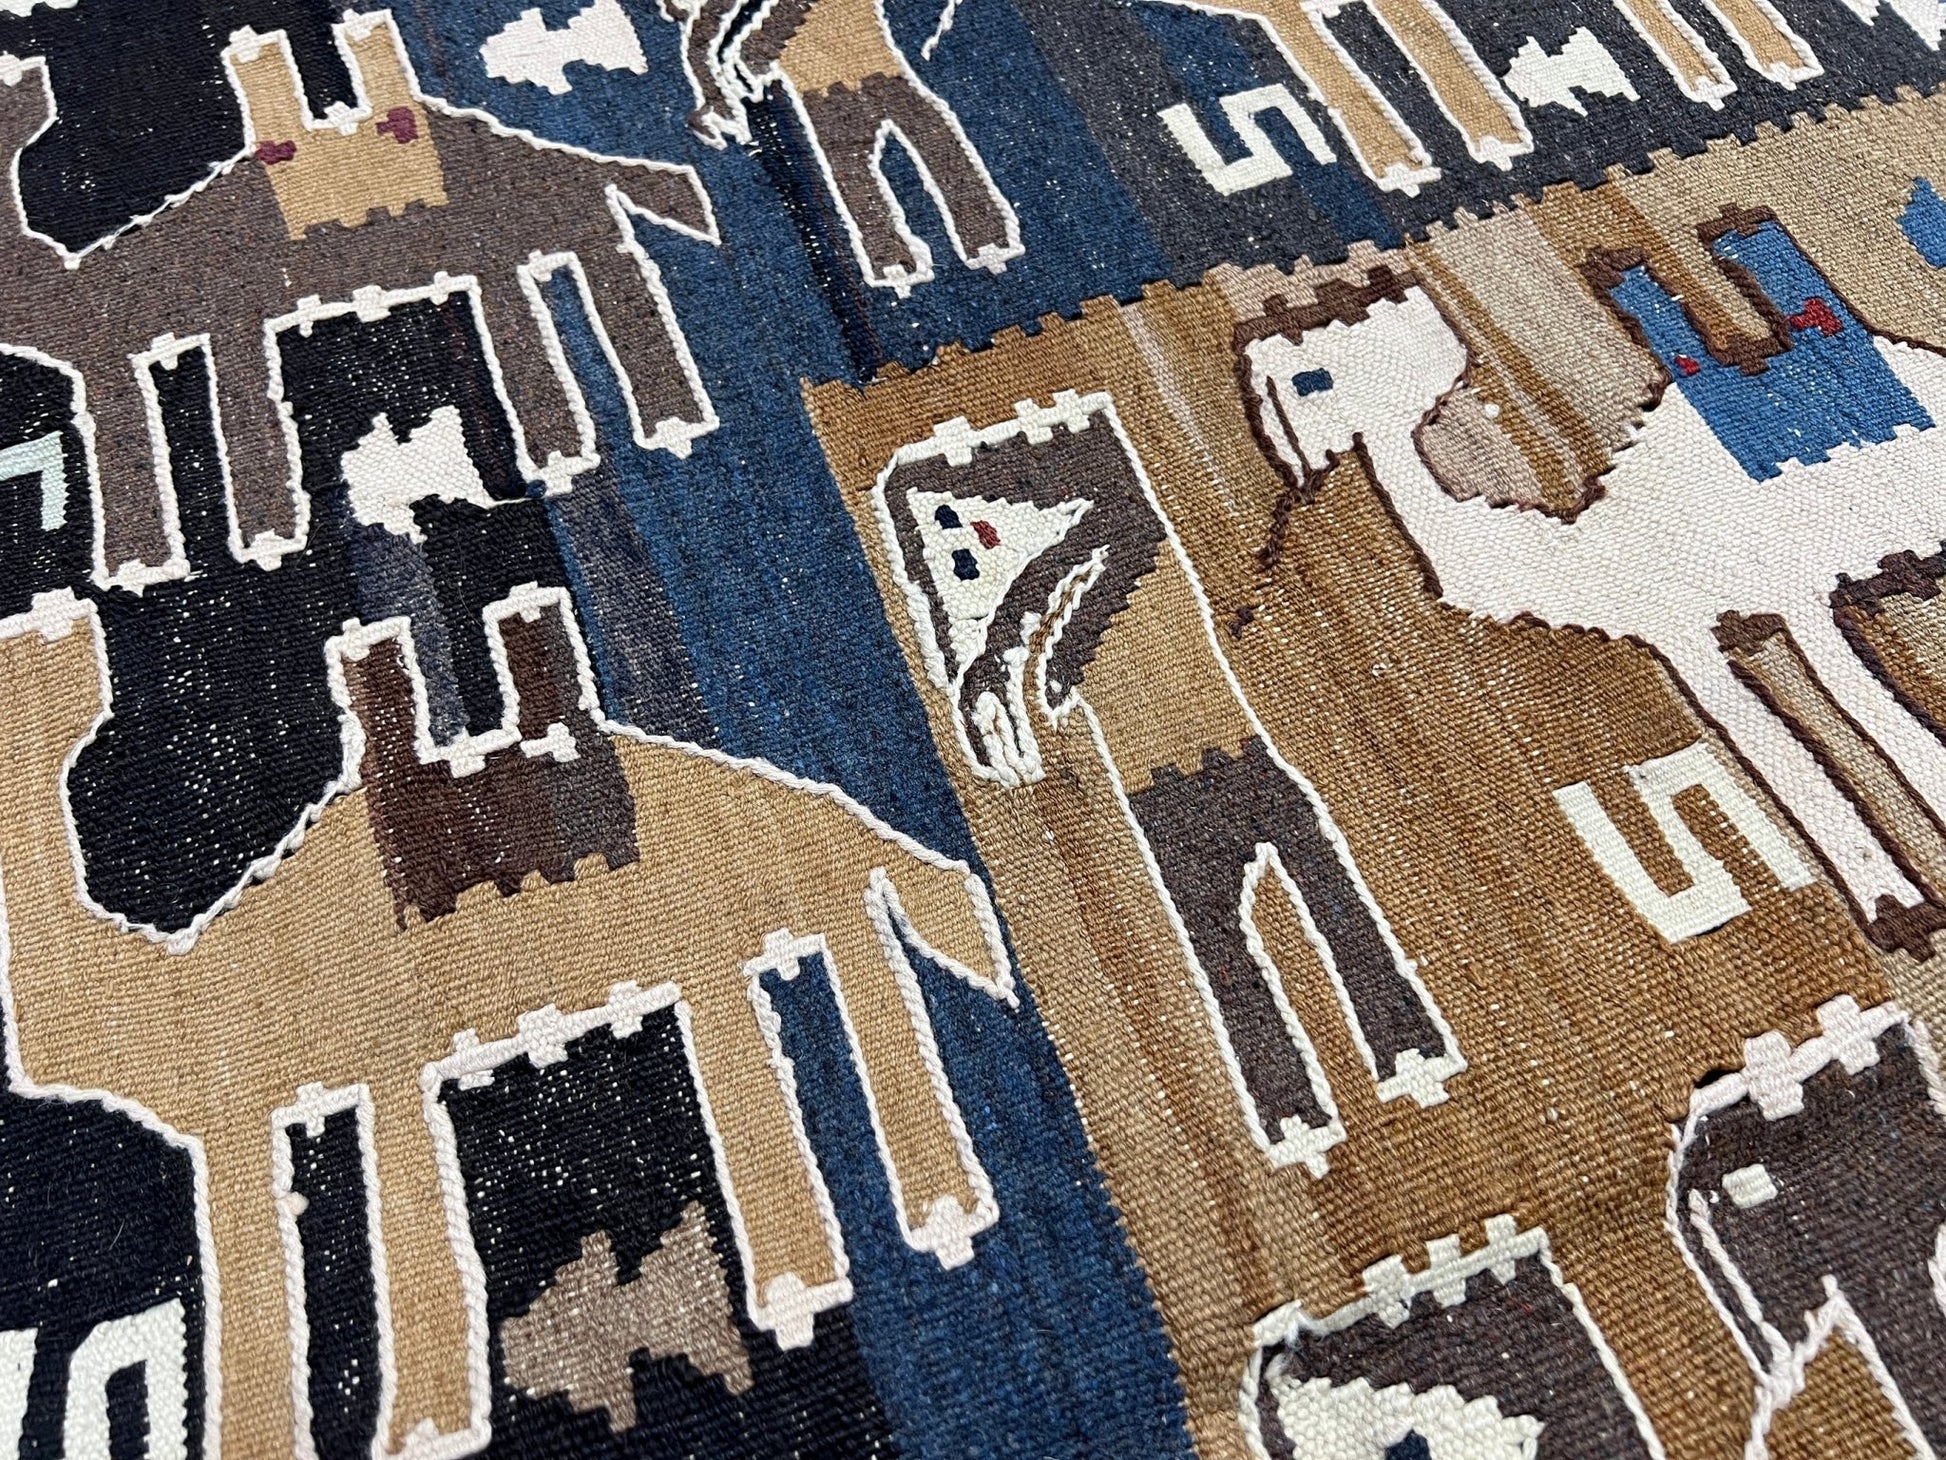  camel caravan persian vintage kilim rug shop san francisco bay area. Oriental rug shop. Buy handmade wool flatweave rug carpet.